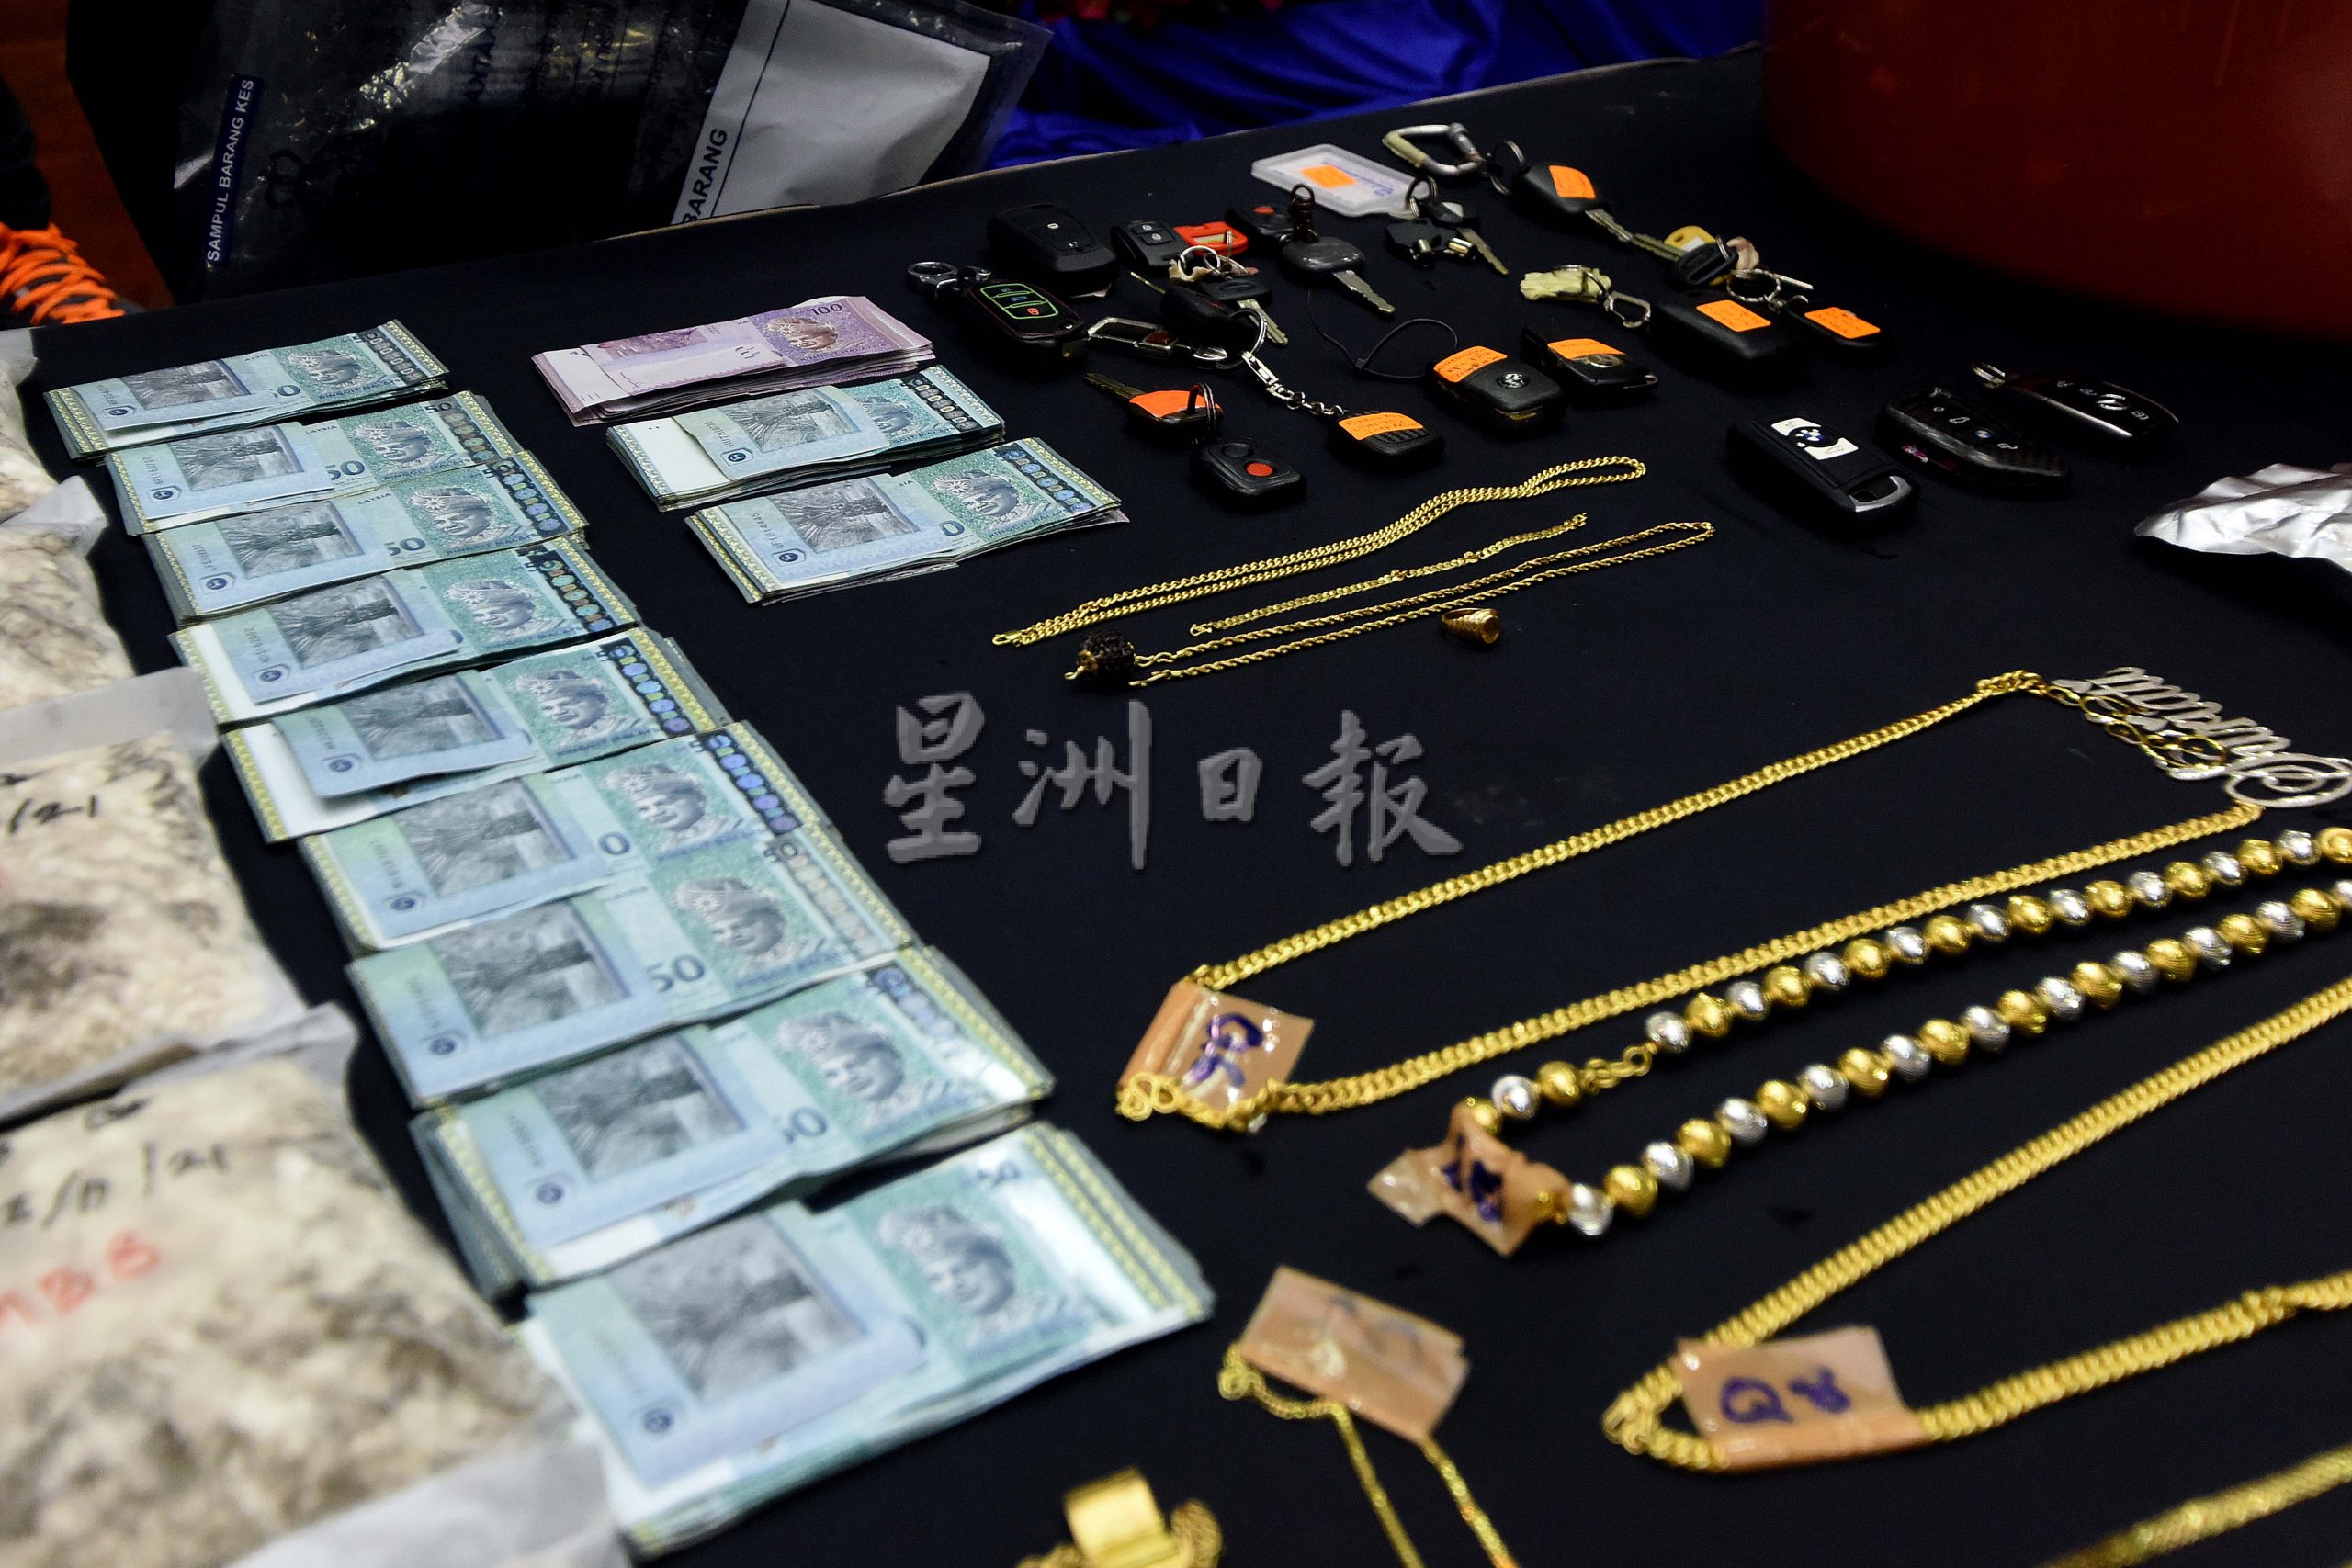 贩毒集团在店屋炼毒.警方起809万令吉毒品10本地男被捕